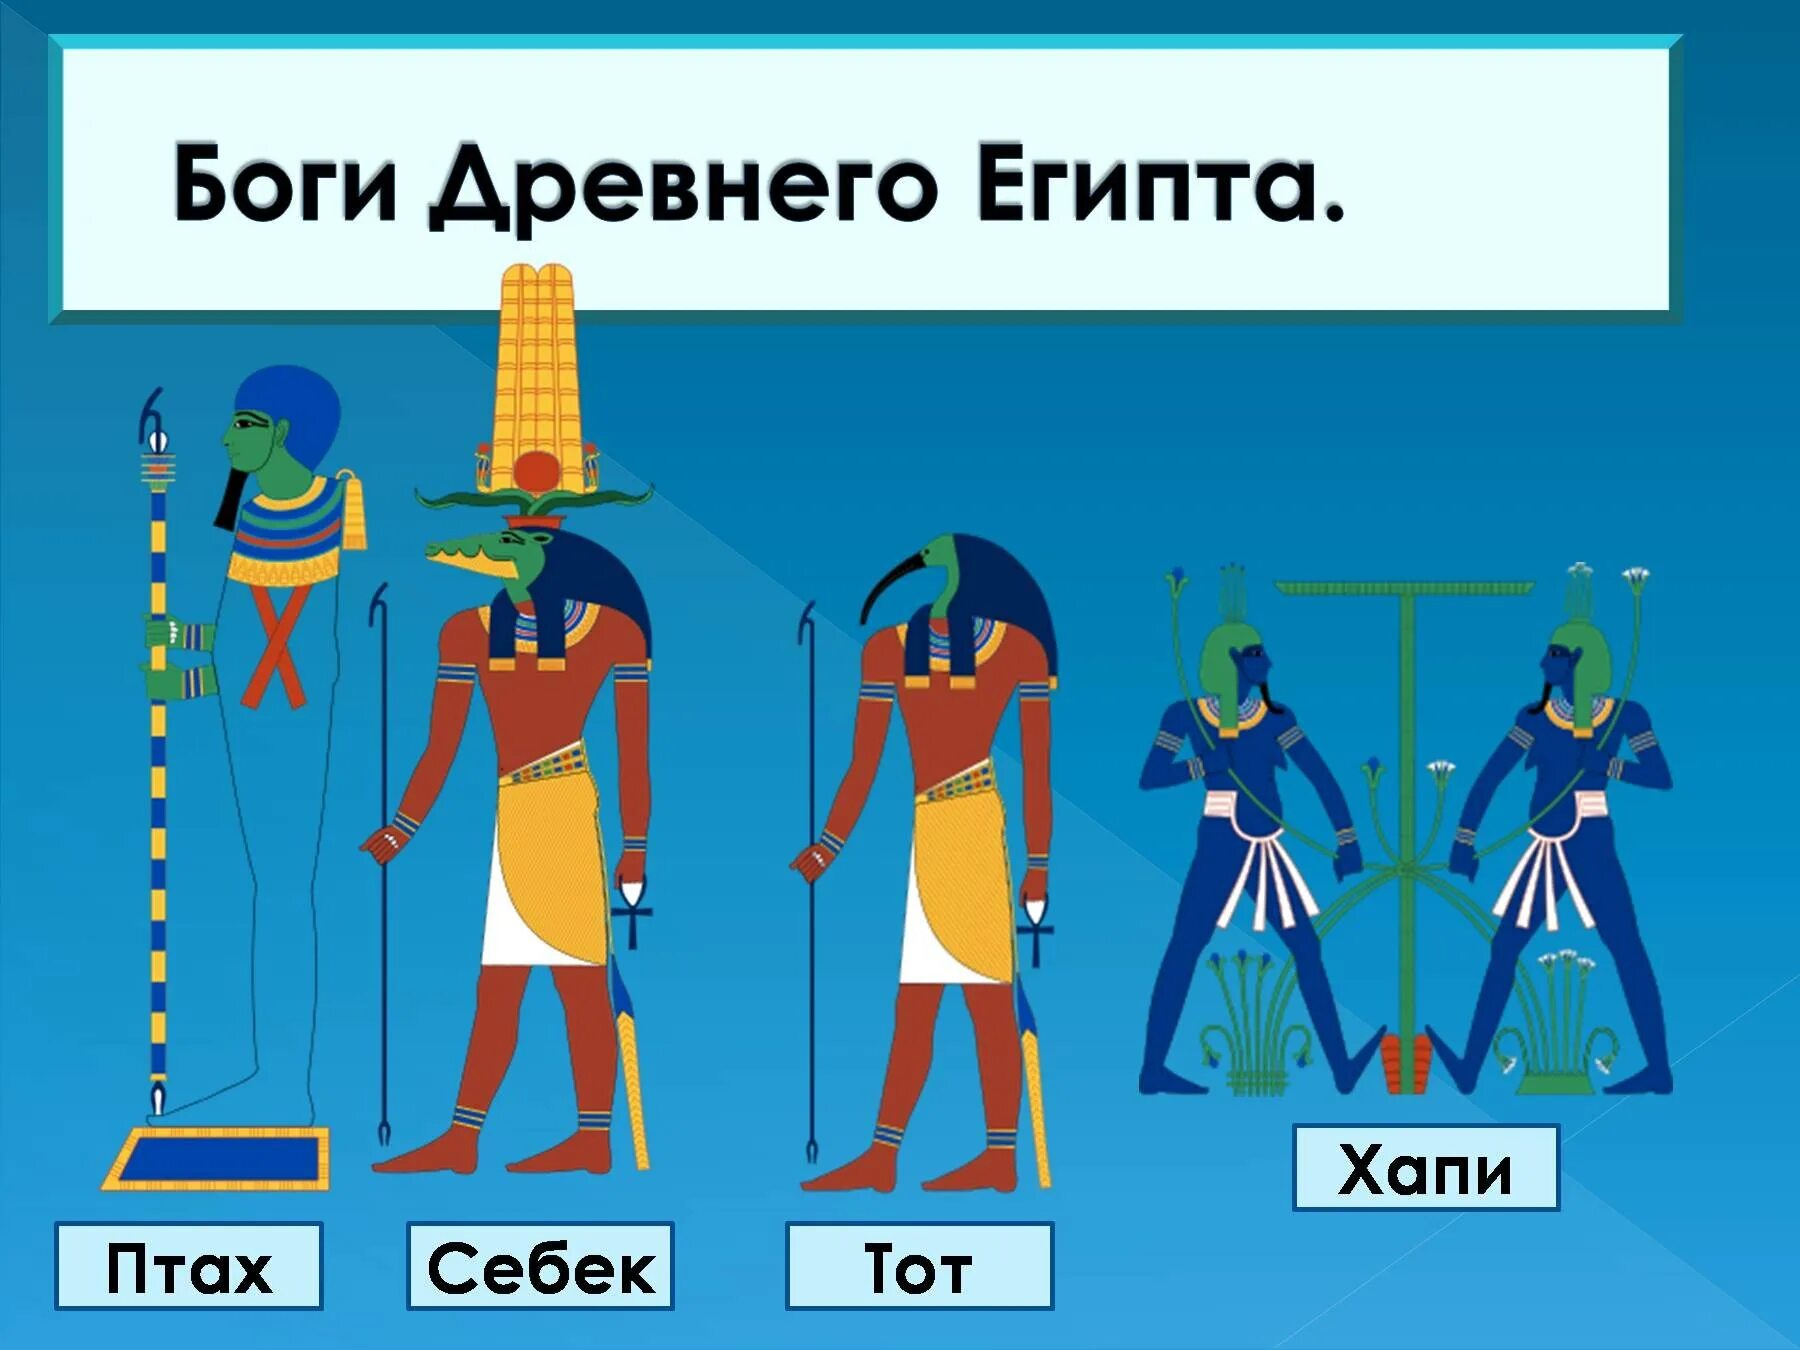 Бог египта на букву и. Хапи Бог Египта. Пантеон древнего Египта. Богиня хапи в древнем Египте. Пантеон богов древнего Египта.